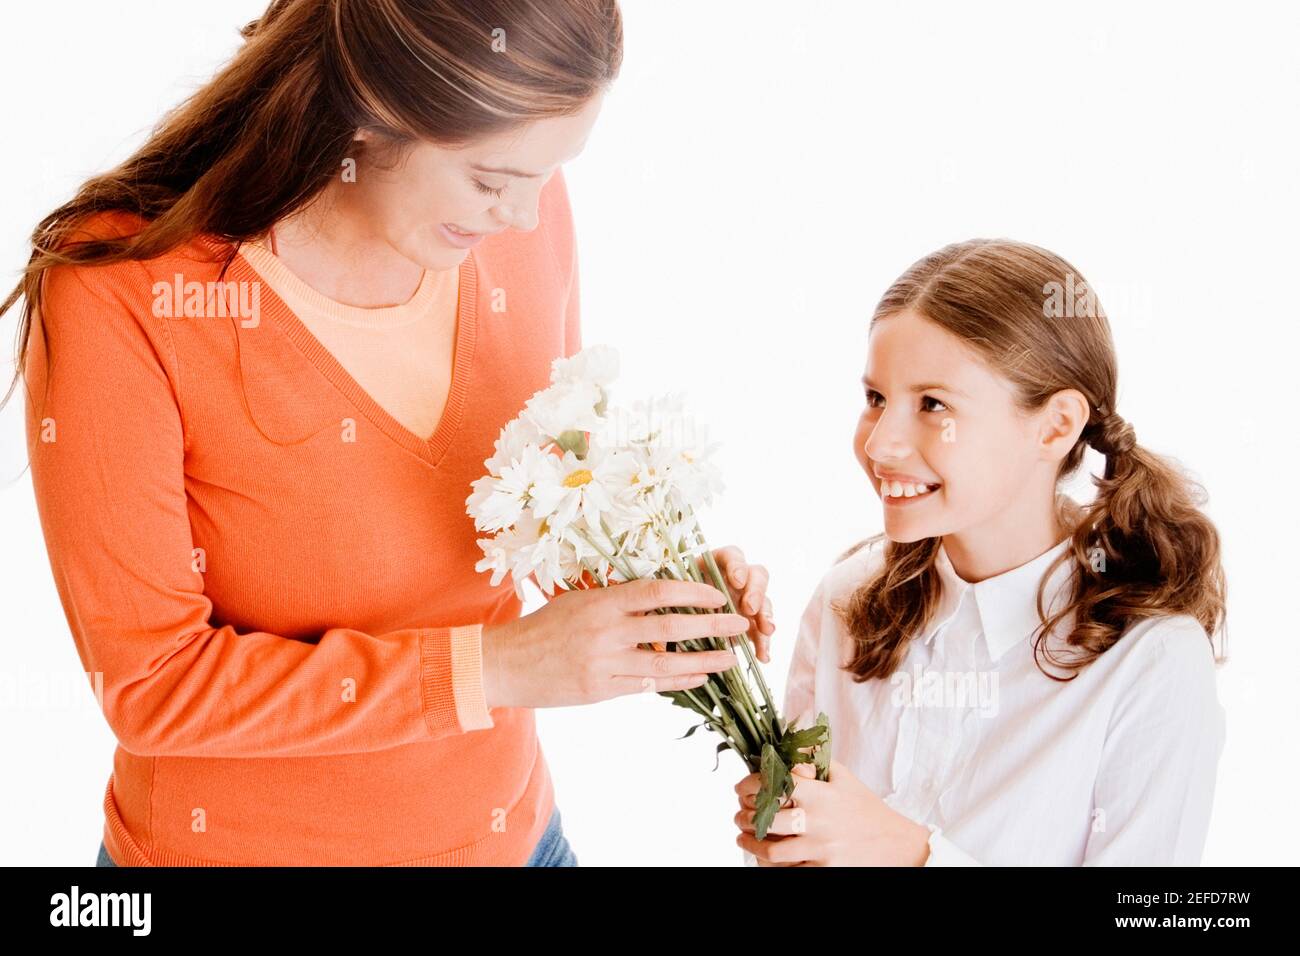 Nahaufnahme eines Mädchens, das ihrer Mutter einen Haufen davon gibt Blumen Stockfoto